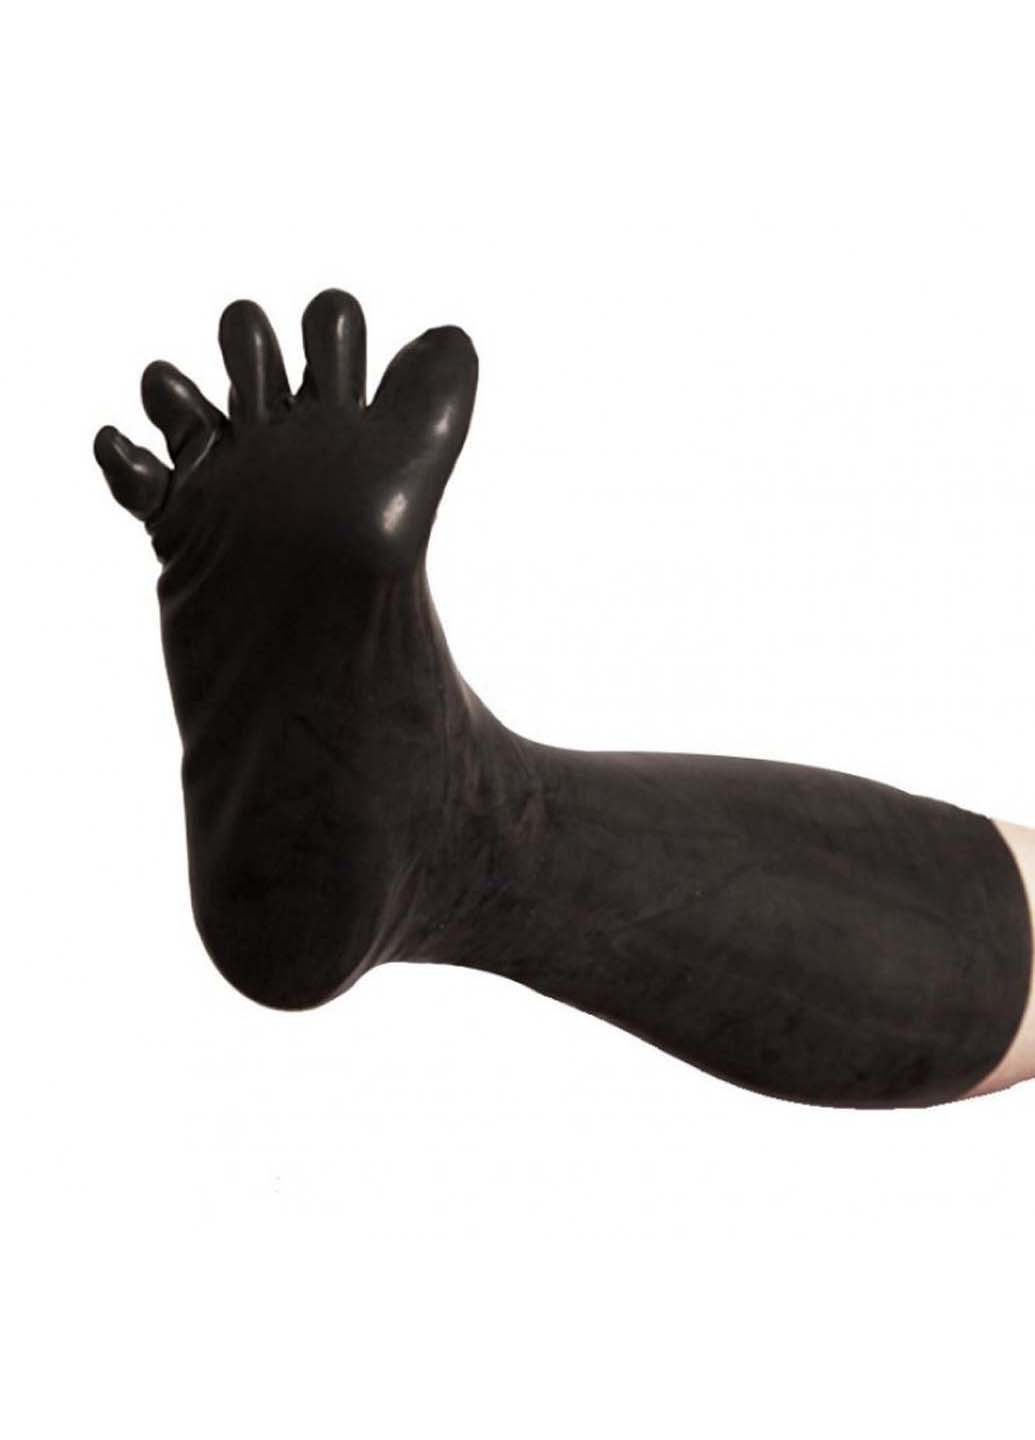 Латексні високі шкарпетки з пальцями Latex Five Fingers Socks Large Bdsm4u (277229355)